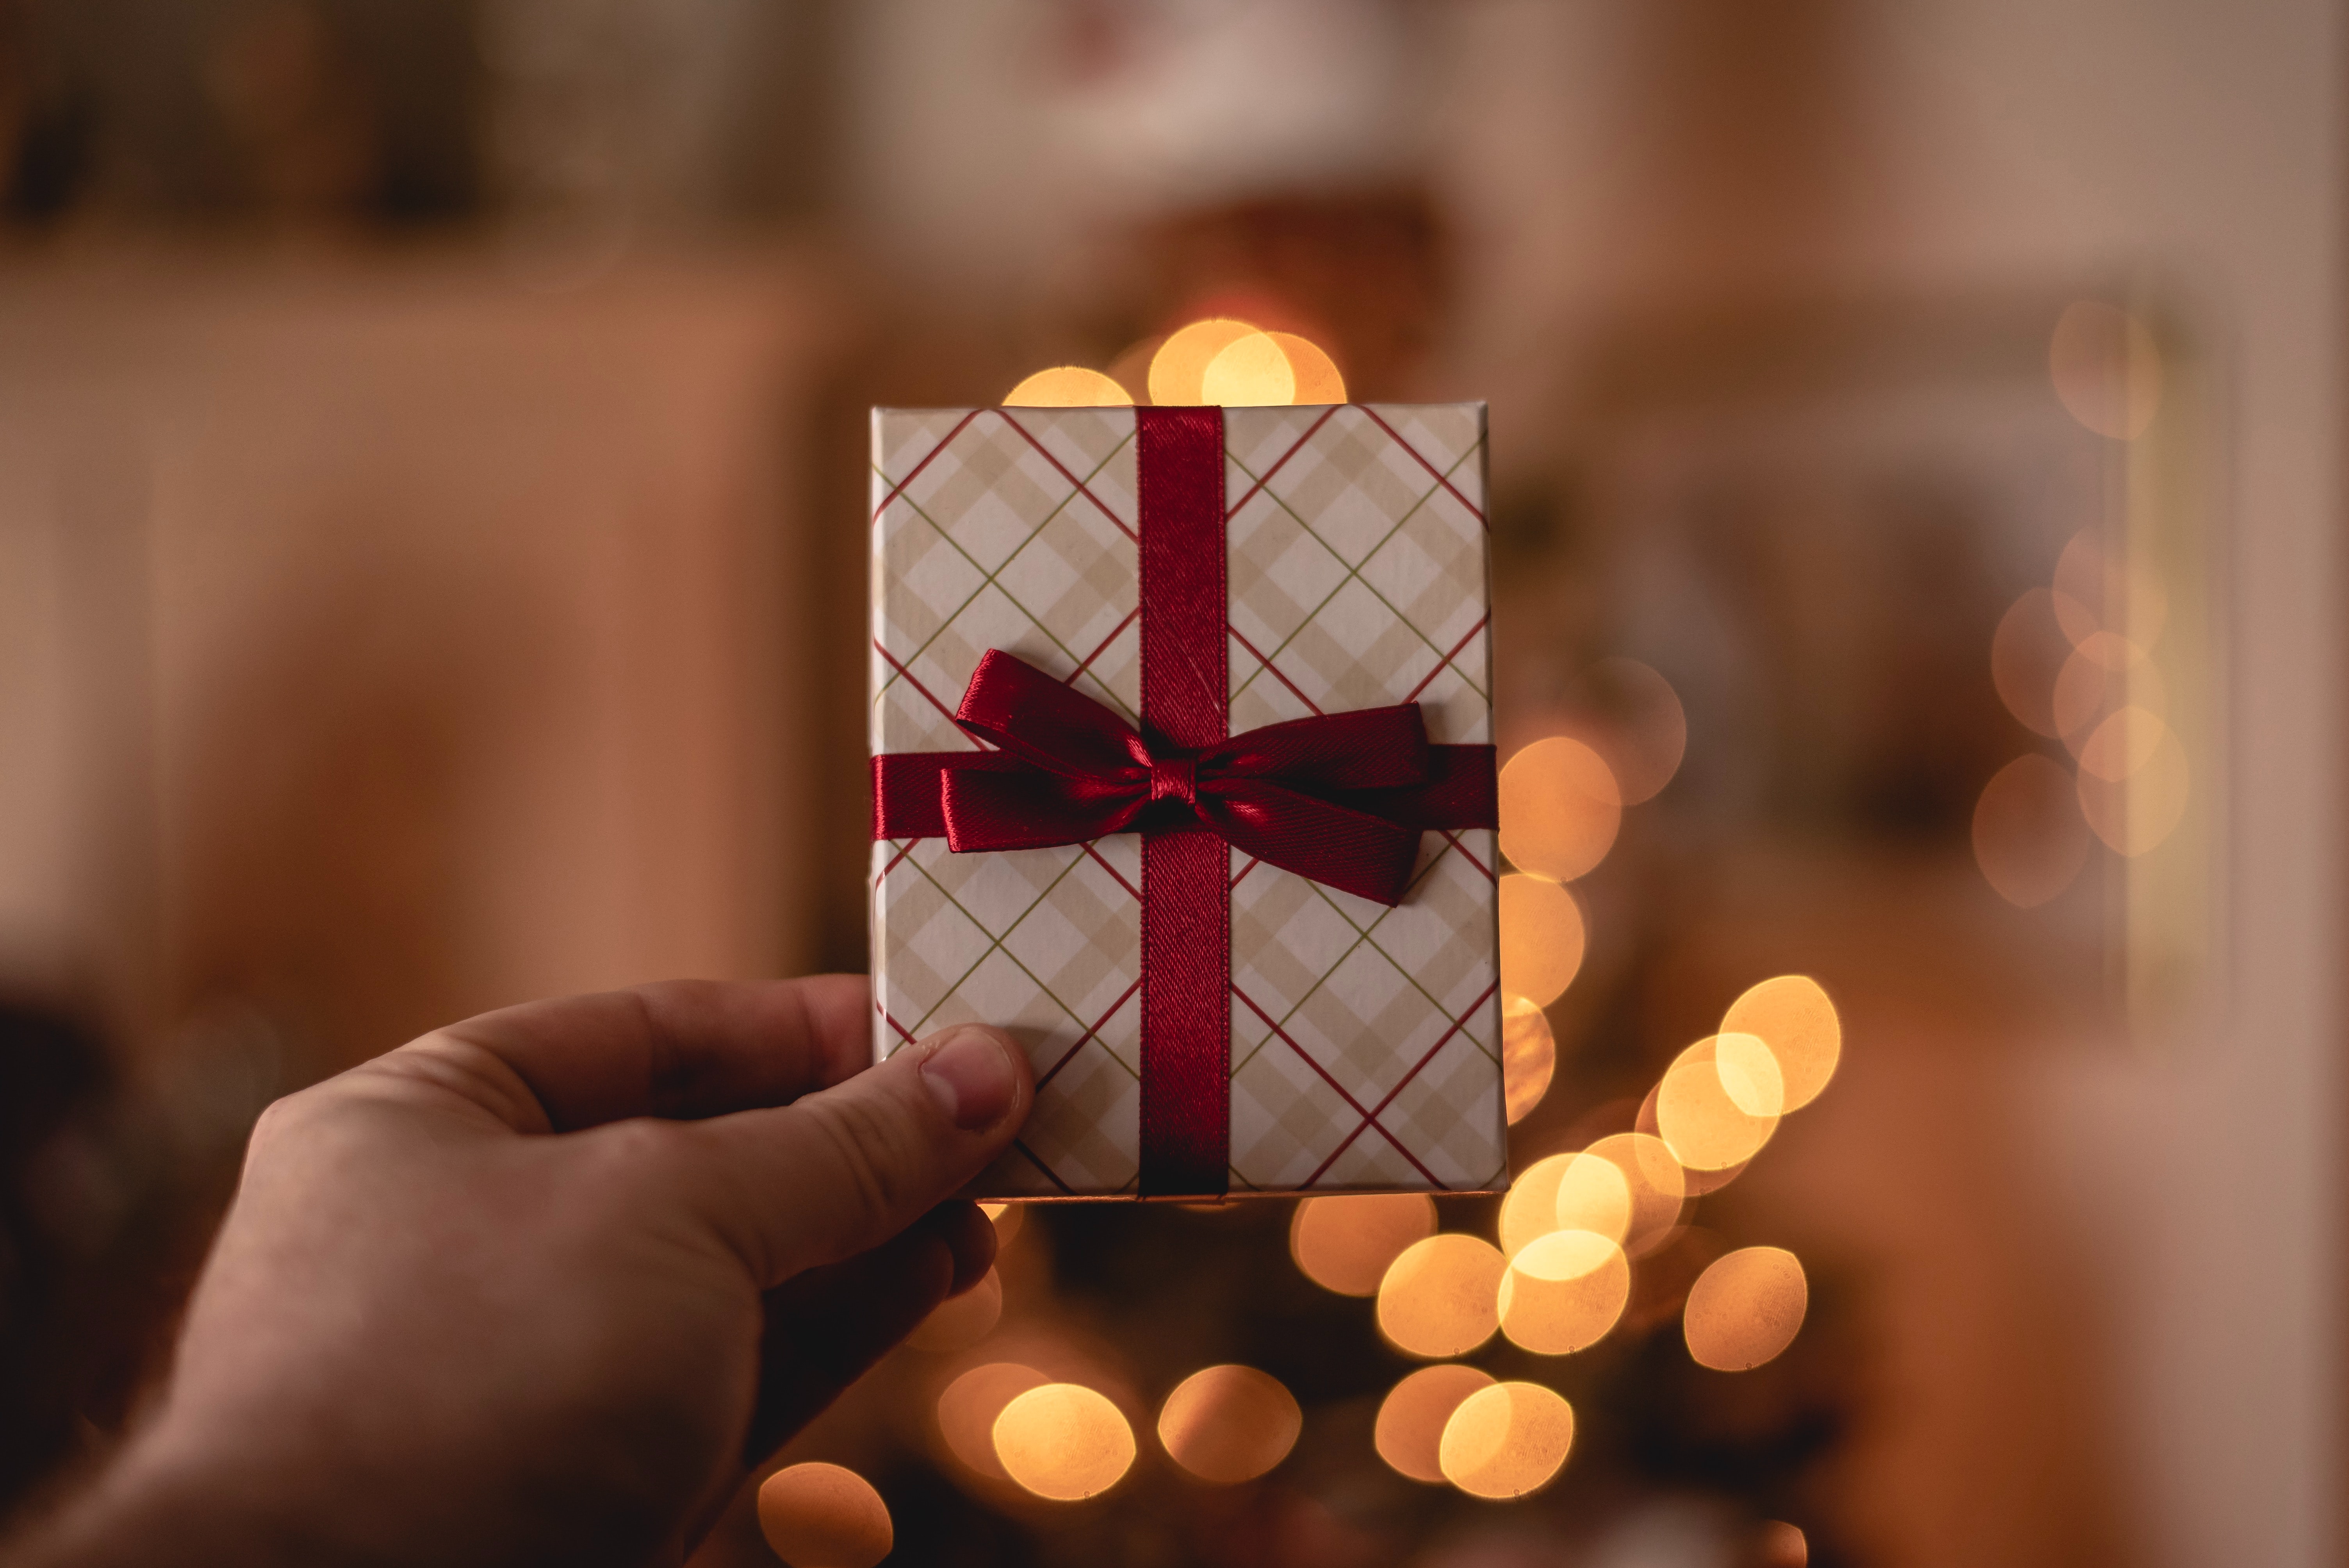 Desde tarjetas hasta cursos virtuales, la tecnología ofrece varias opciones para regalar en navidad.